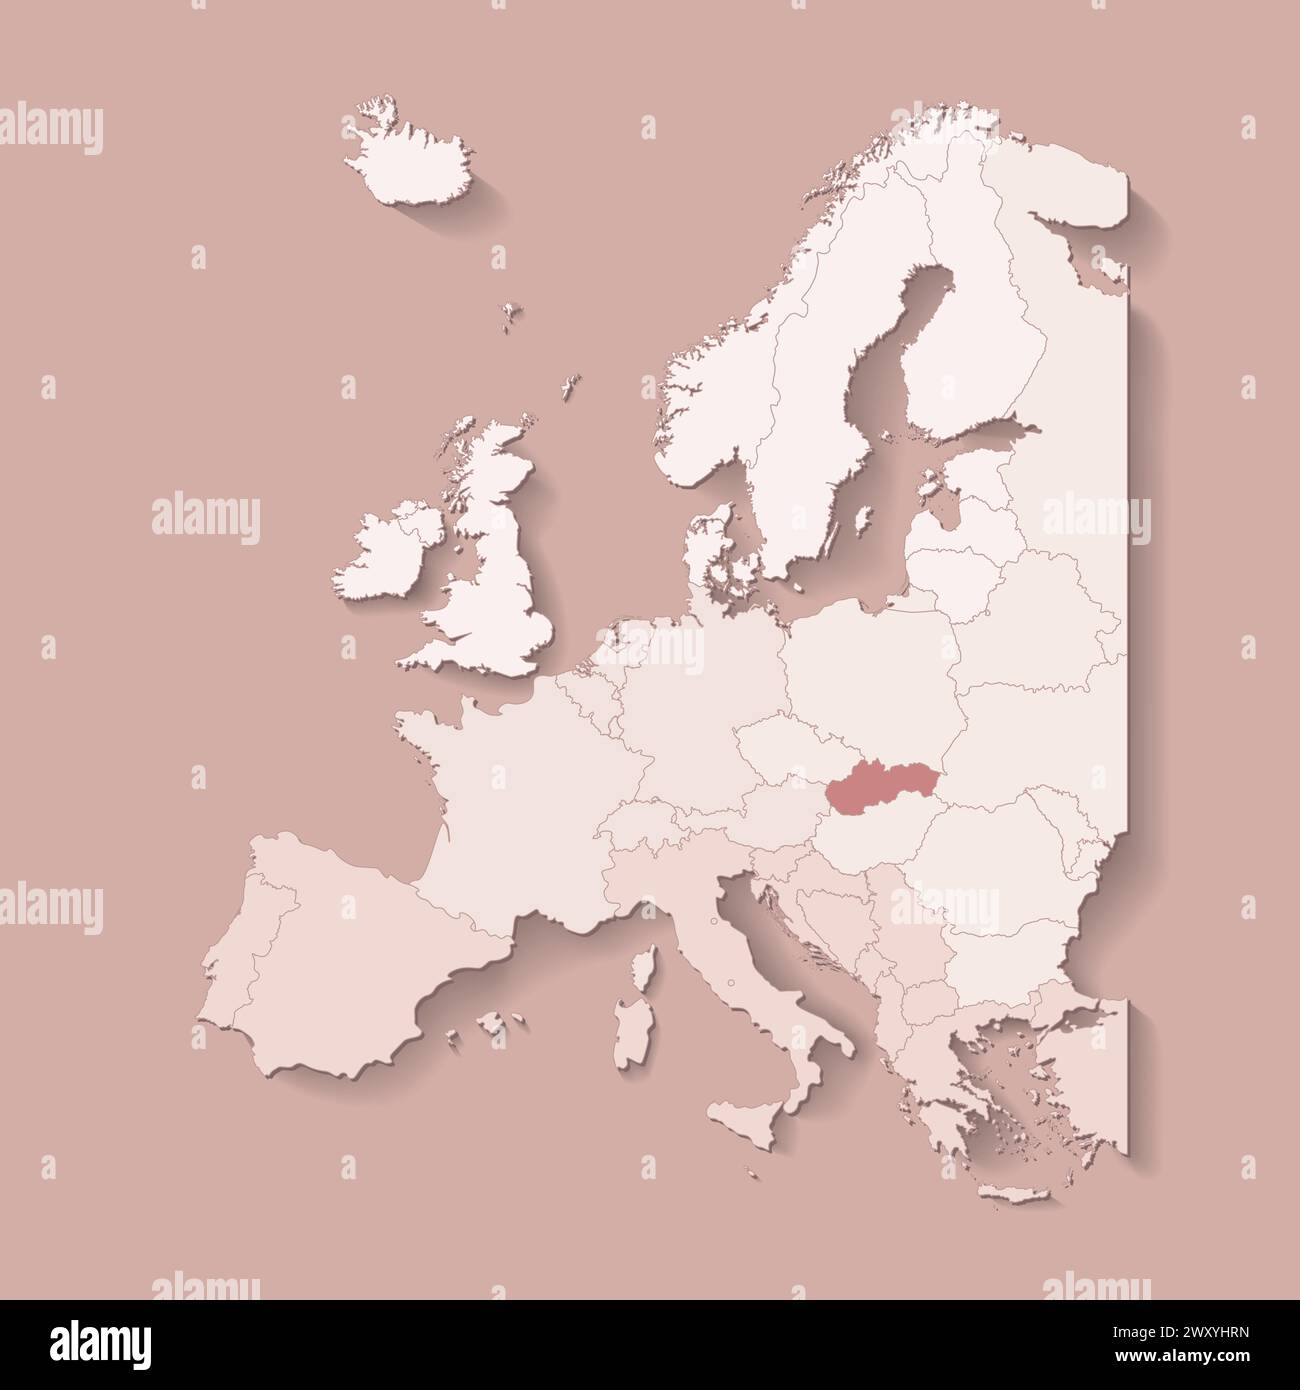 Illustrazione vettoriale con terra europea con confini di stati e paese contrassegnato Slovacchia. Mappa politica di colore marrone con occidentale, sud e così via Illustrazione Vettoriale